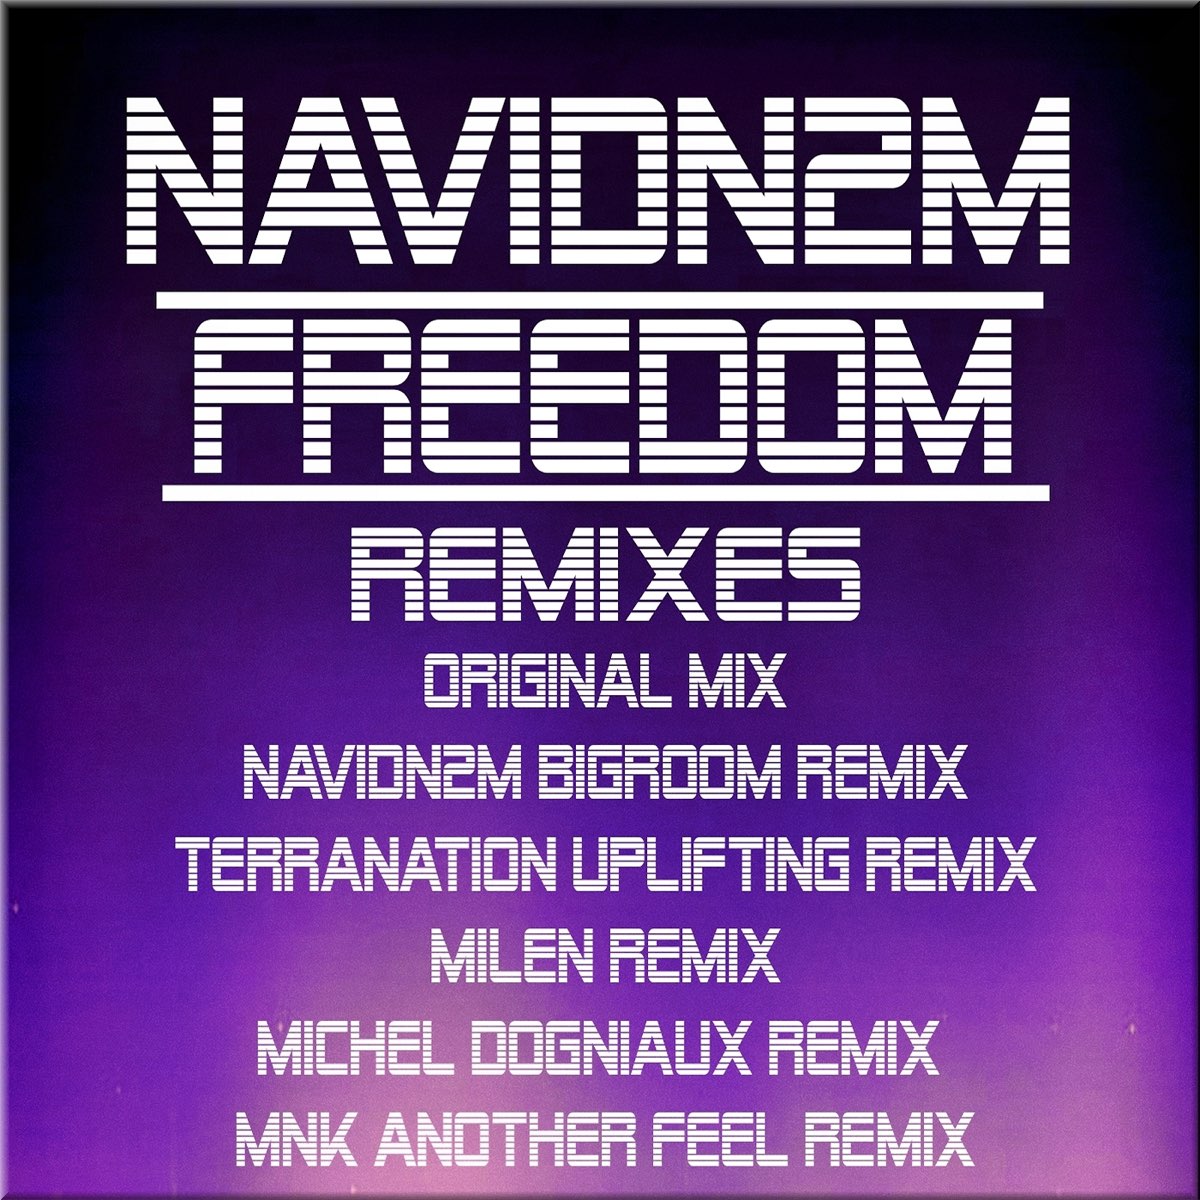 Remix Freedom. 7 A.M. Remix. Feeling песня ремикс